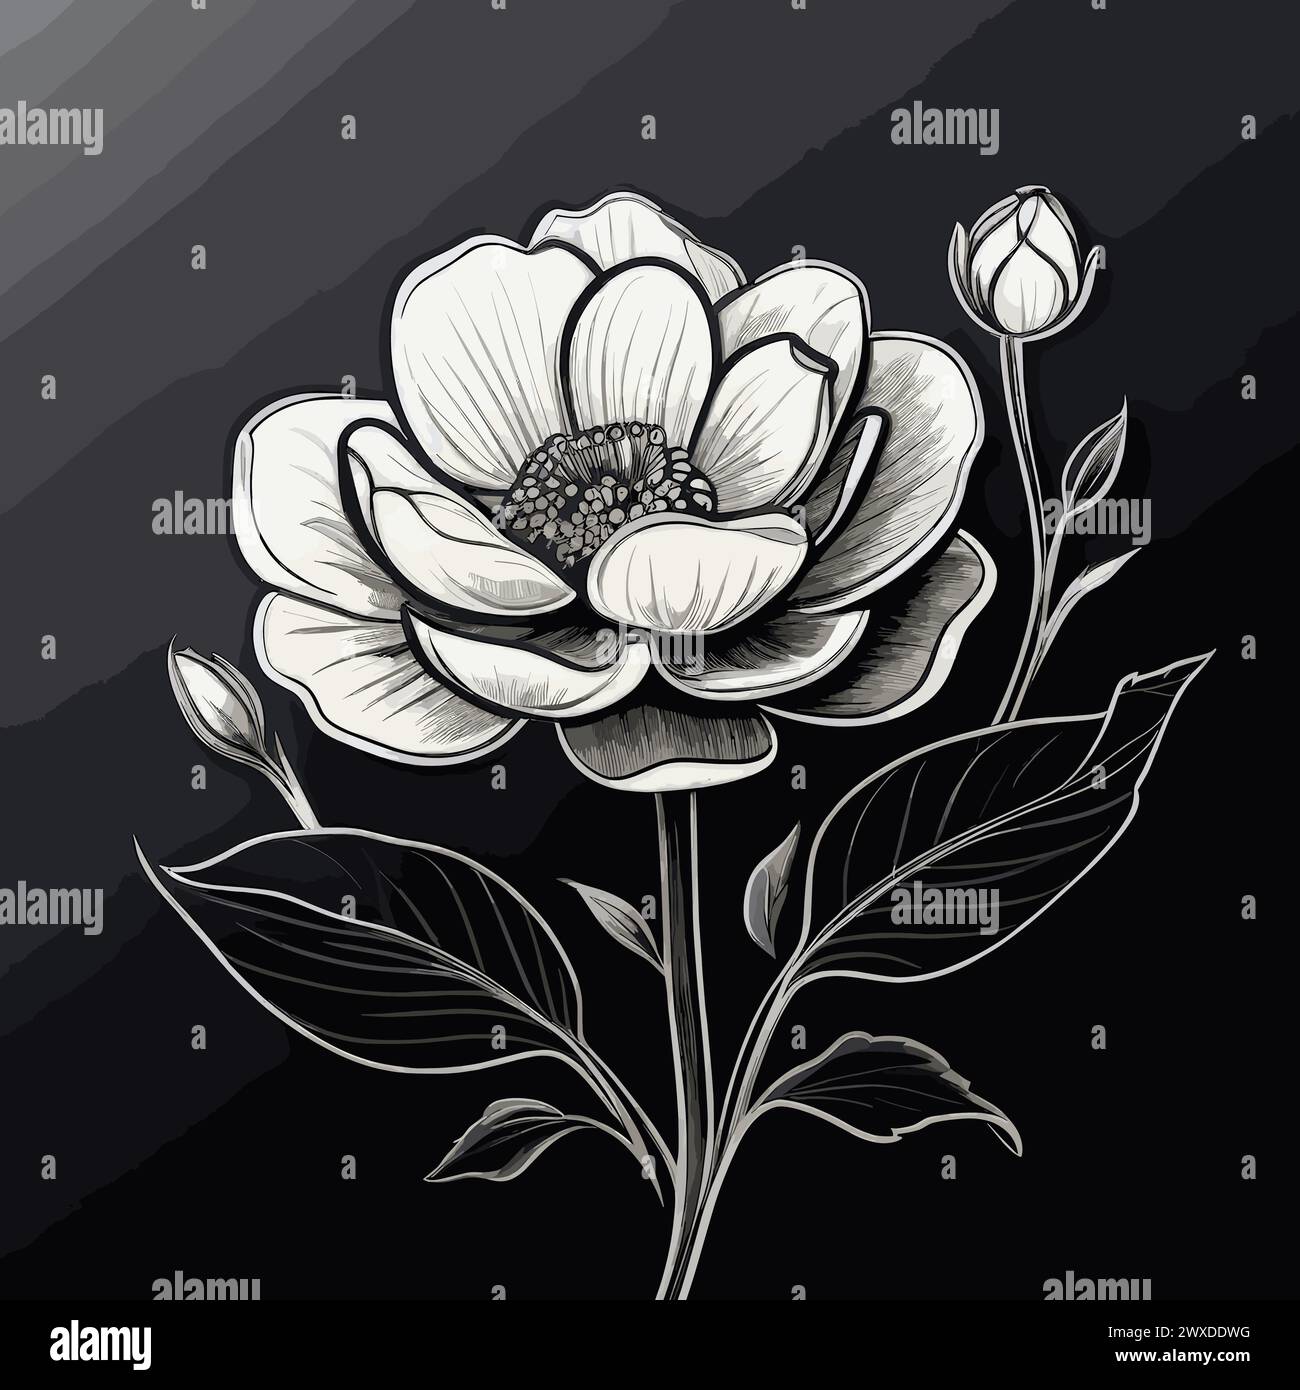 Schizzo disegnato a mano di un fiore di peonia. Illustrazione vettoriale in bianco e nero. Illustrazione Vettoriale